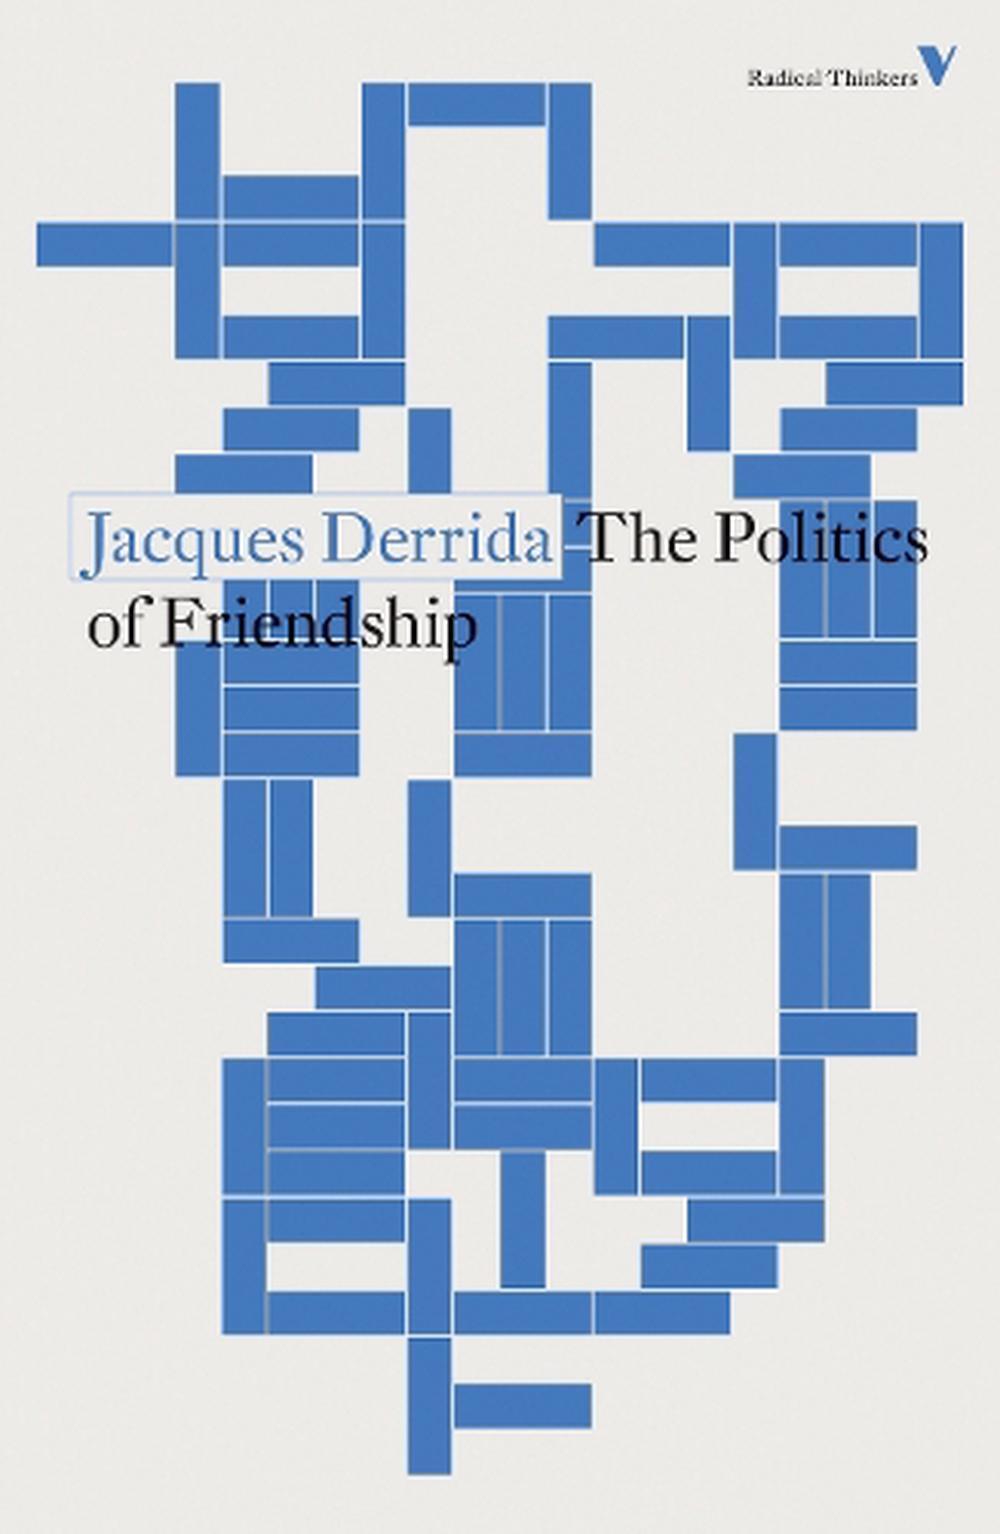 The Politics of Friendship ร้านหนังสือและสิ่งของ เป็นร้านหนังสือภาษาอังกฤษหายาก และร้านกาแฟ หรือ บุ๊คคาเฟ่ ตั้งอยู่สุขุมวิท กรุงเทพ